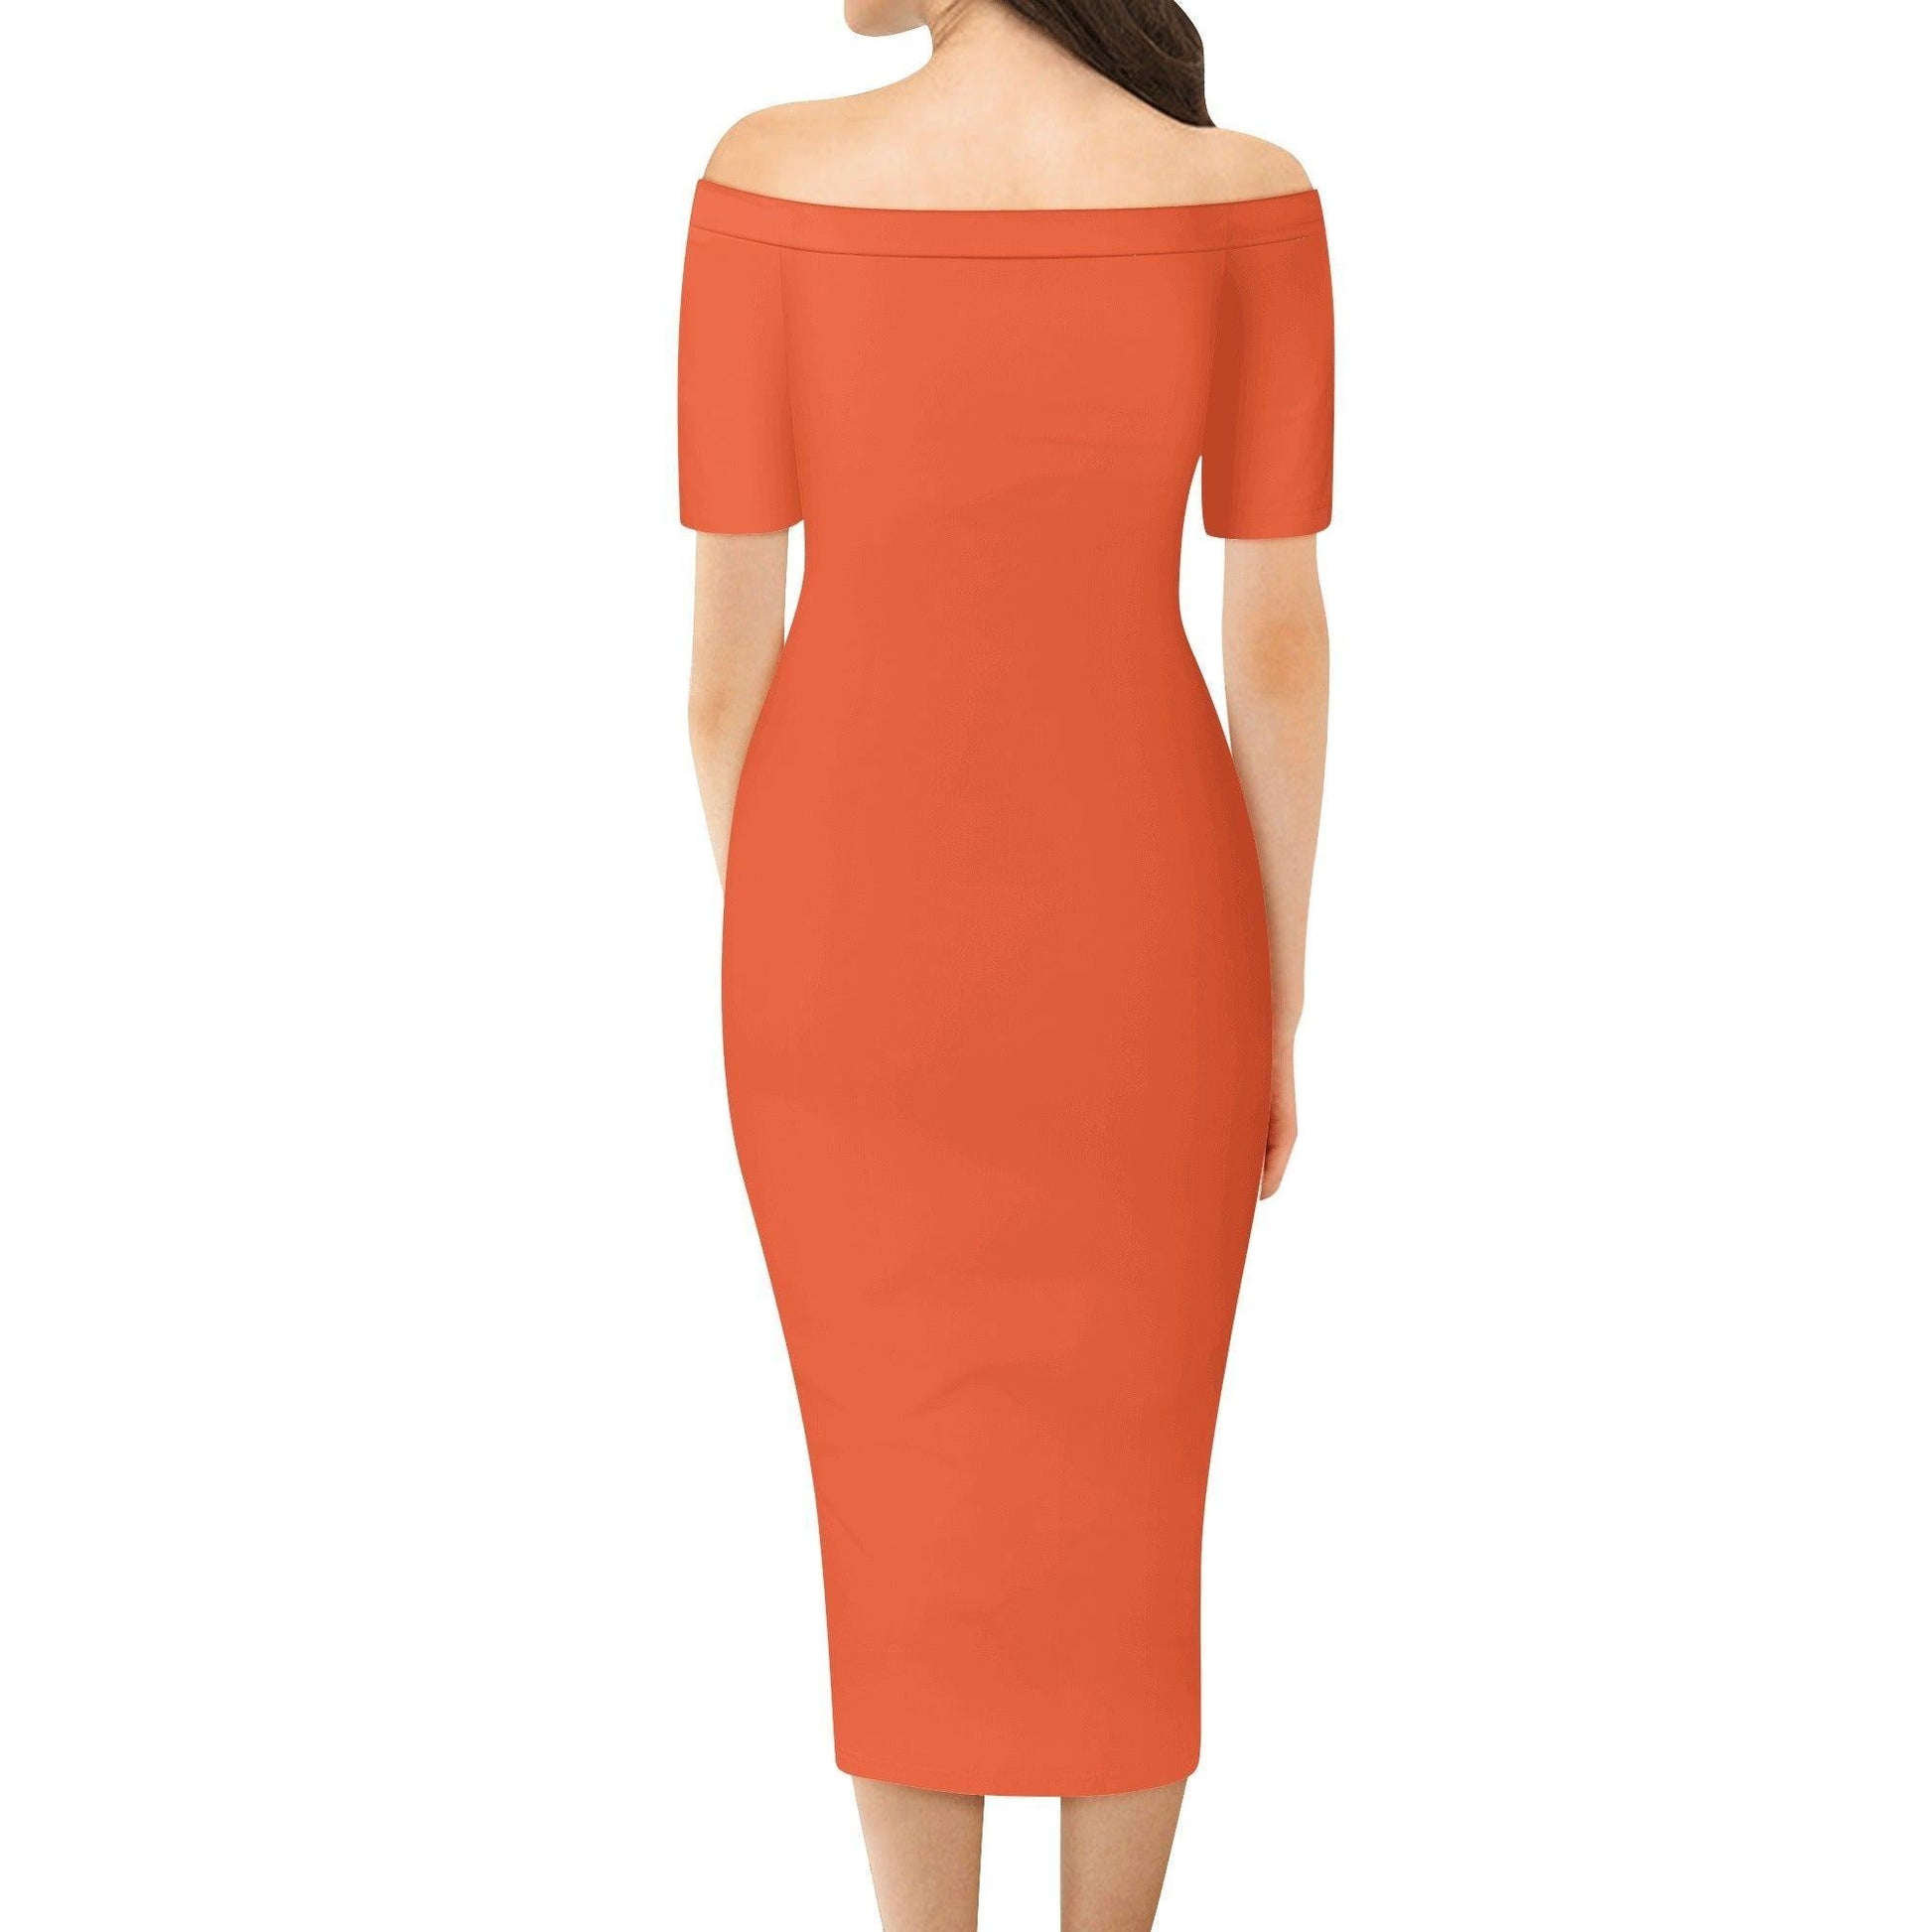 Outrageous Orange Off-Shoulder-Kleid -- Outrageous Orange Off-Shoulder-Kleid - undefined Off-Shoulder-Kleid | JLR Design